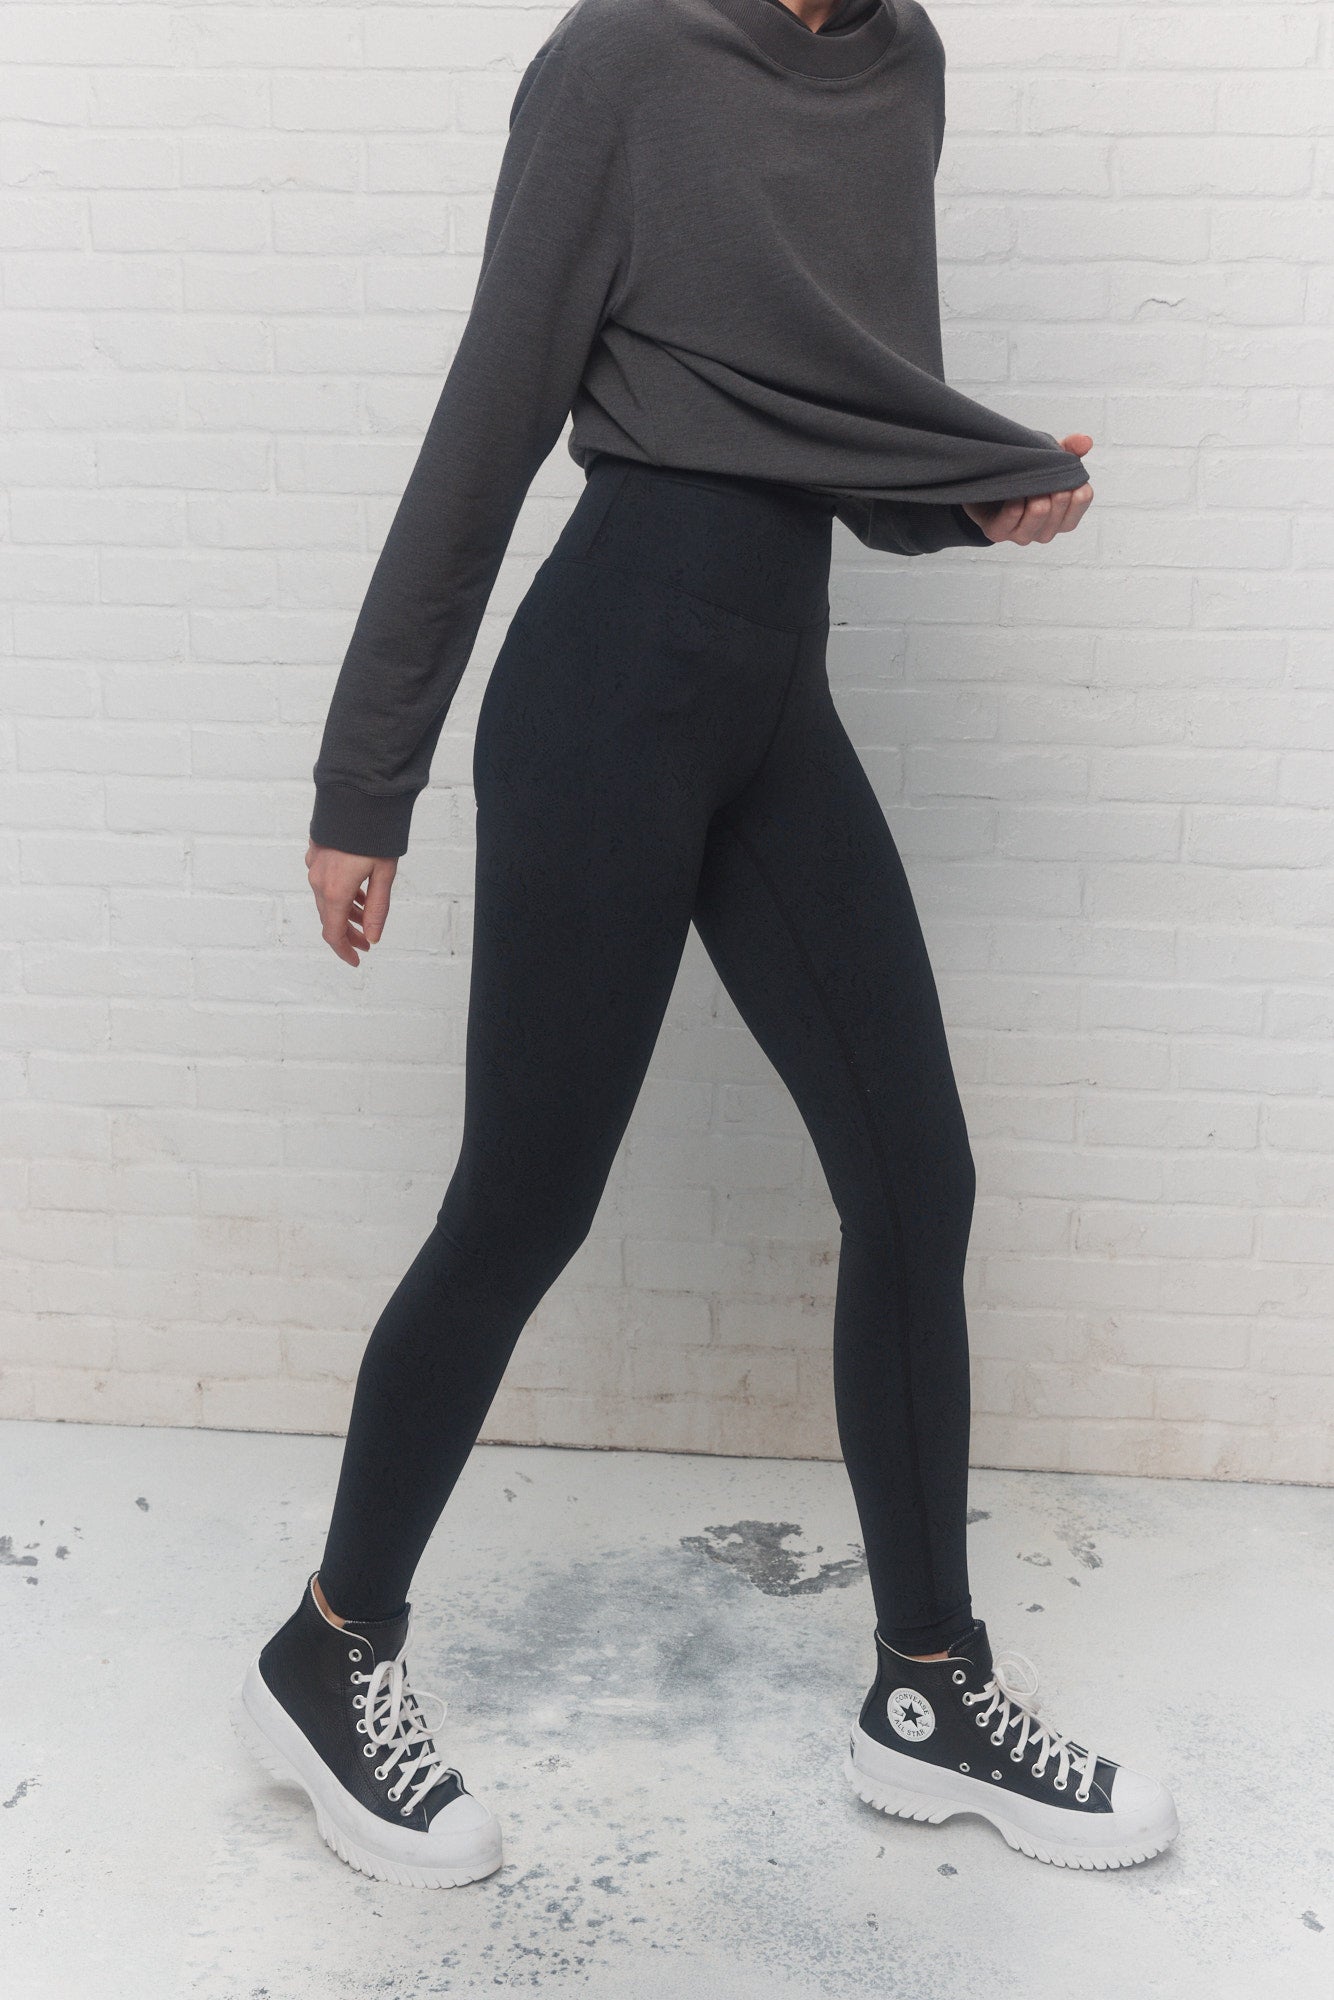 High-waisted black snake-effect leggings | Twain